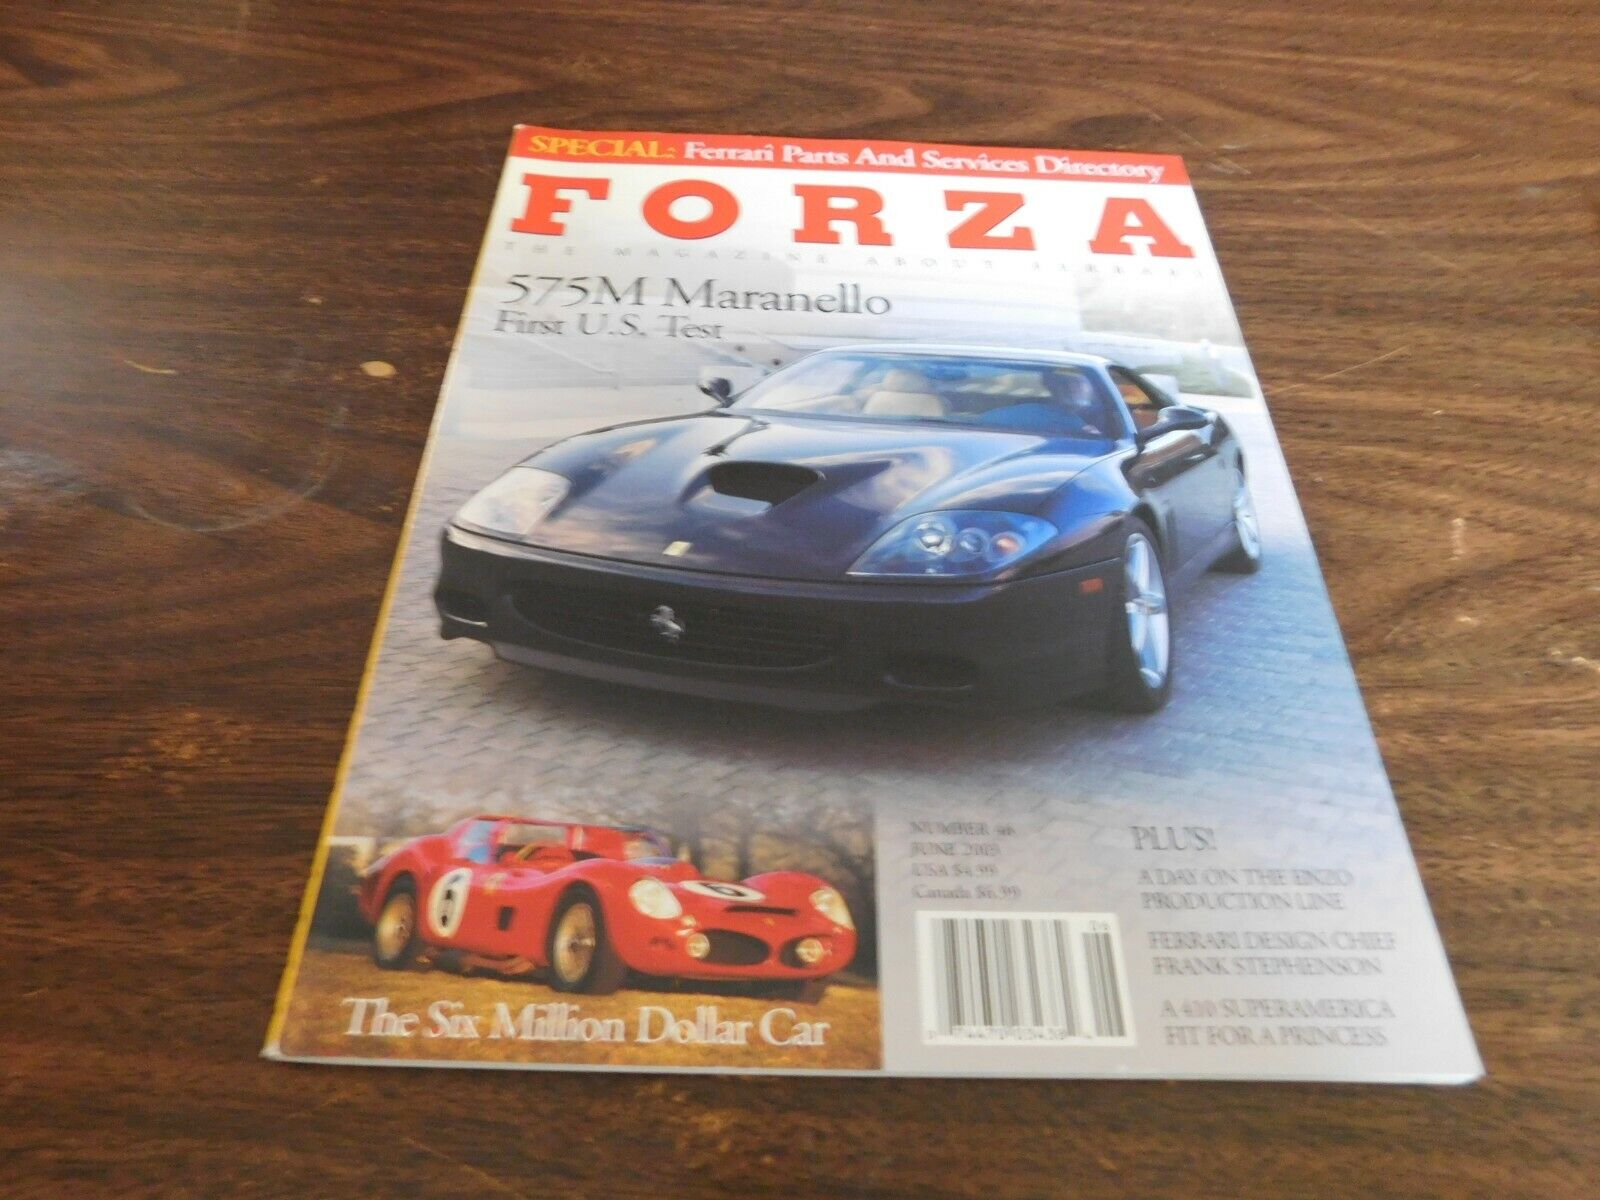 Forza The Magazine About Ferrari #46 June 2003 575M Maranello , Enzo